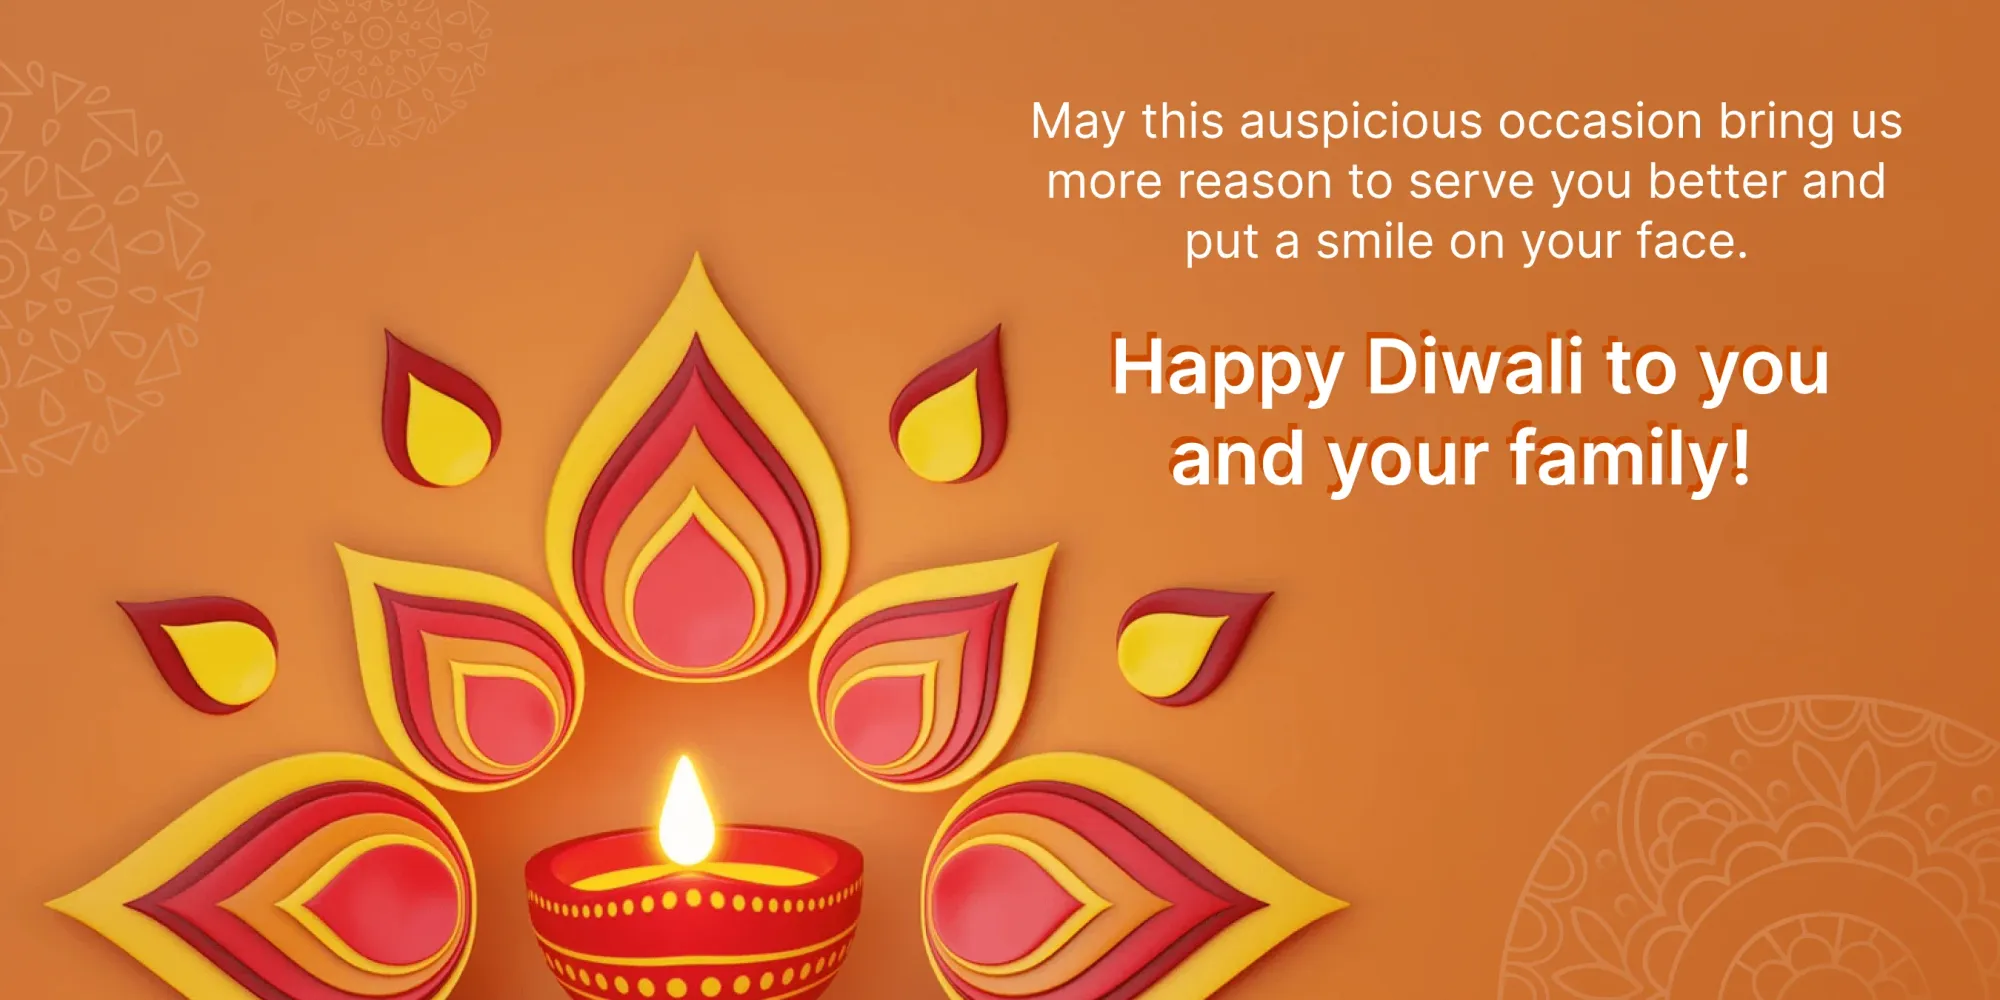 I migliori auguri di Diwali per i clienti